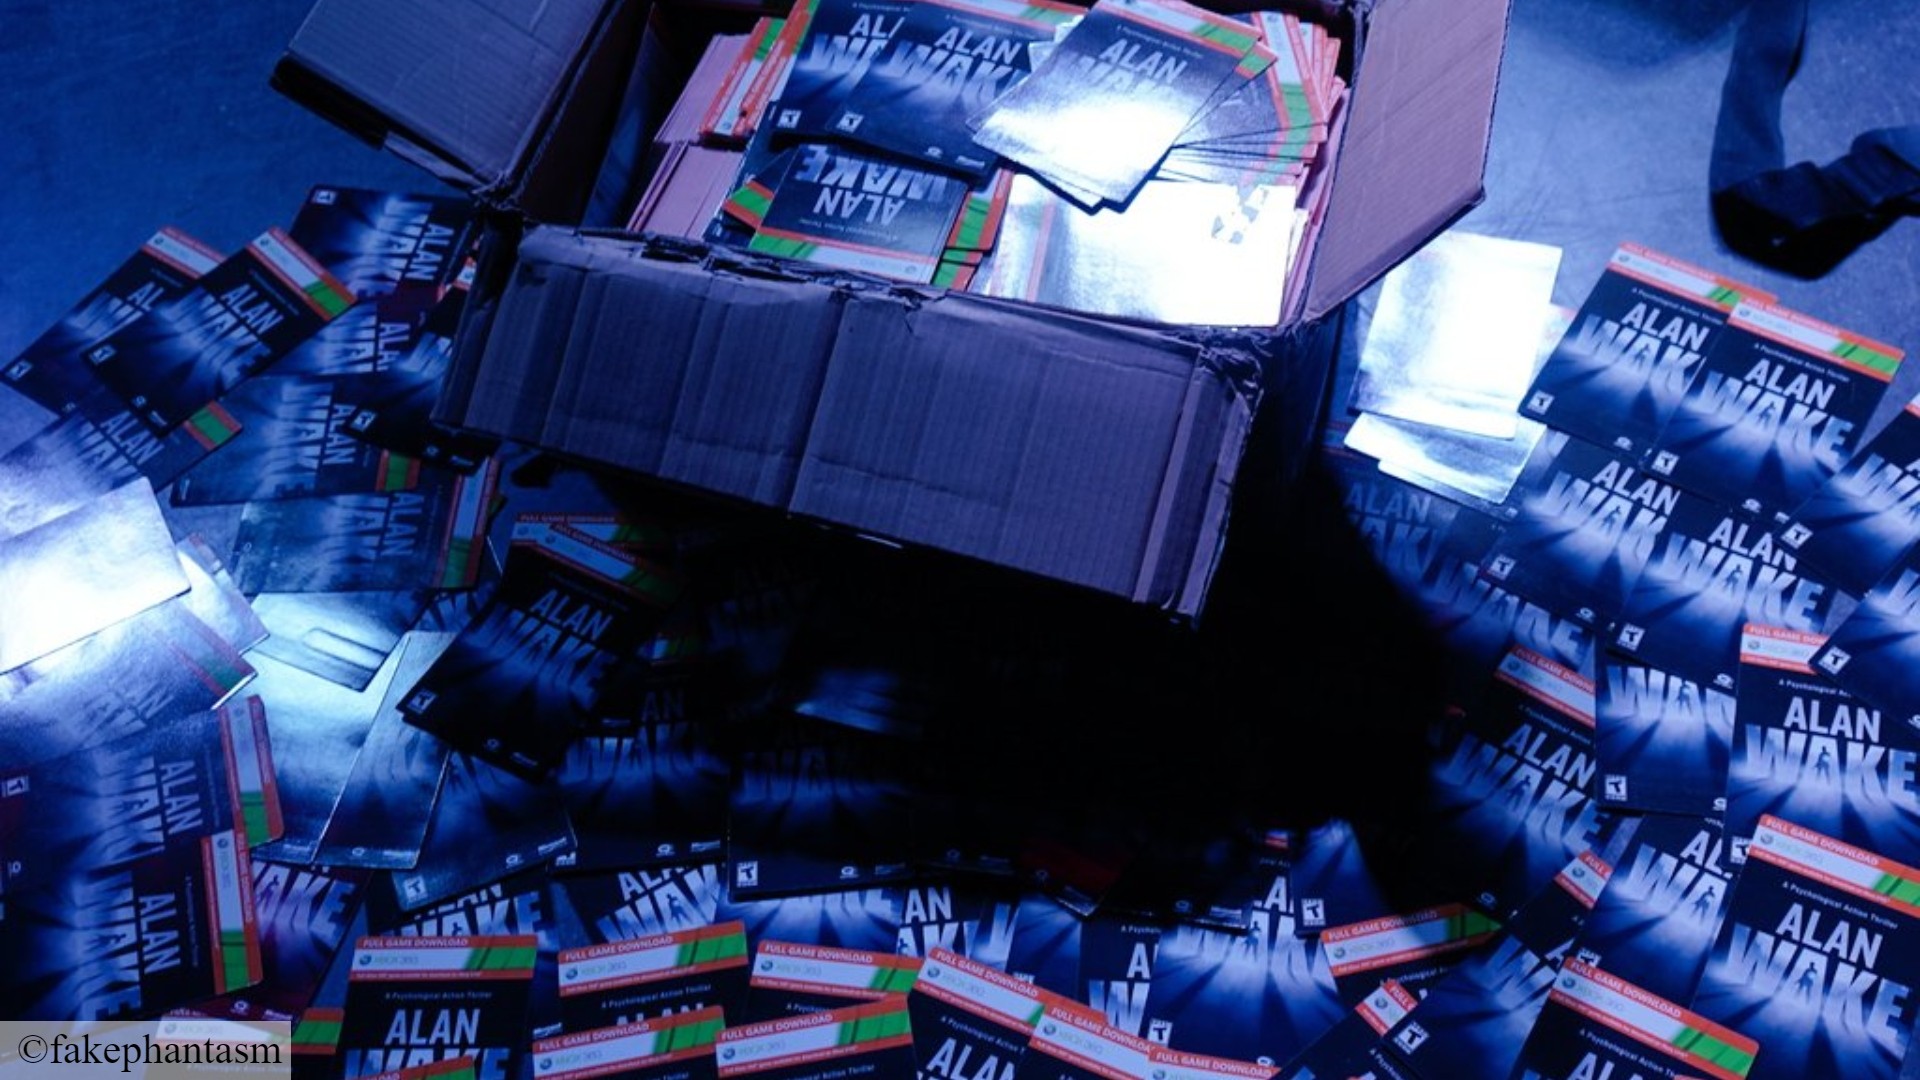 Alan Wake Steam-Horrorspiel: Eine riesige Schachtel mit Alan Wake-Downloadkarten